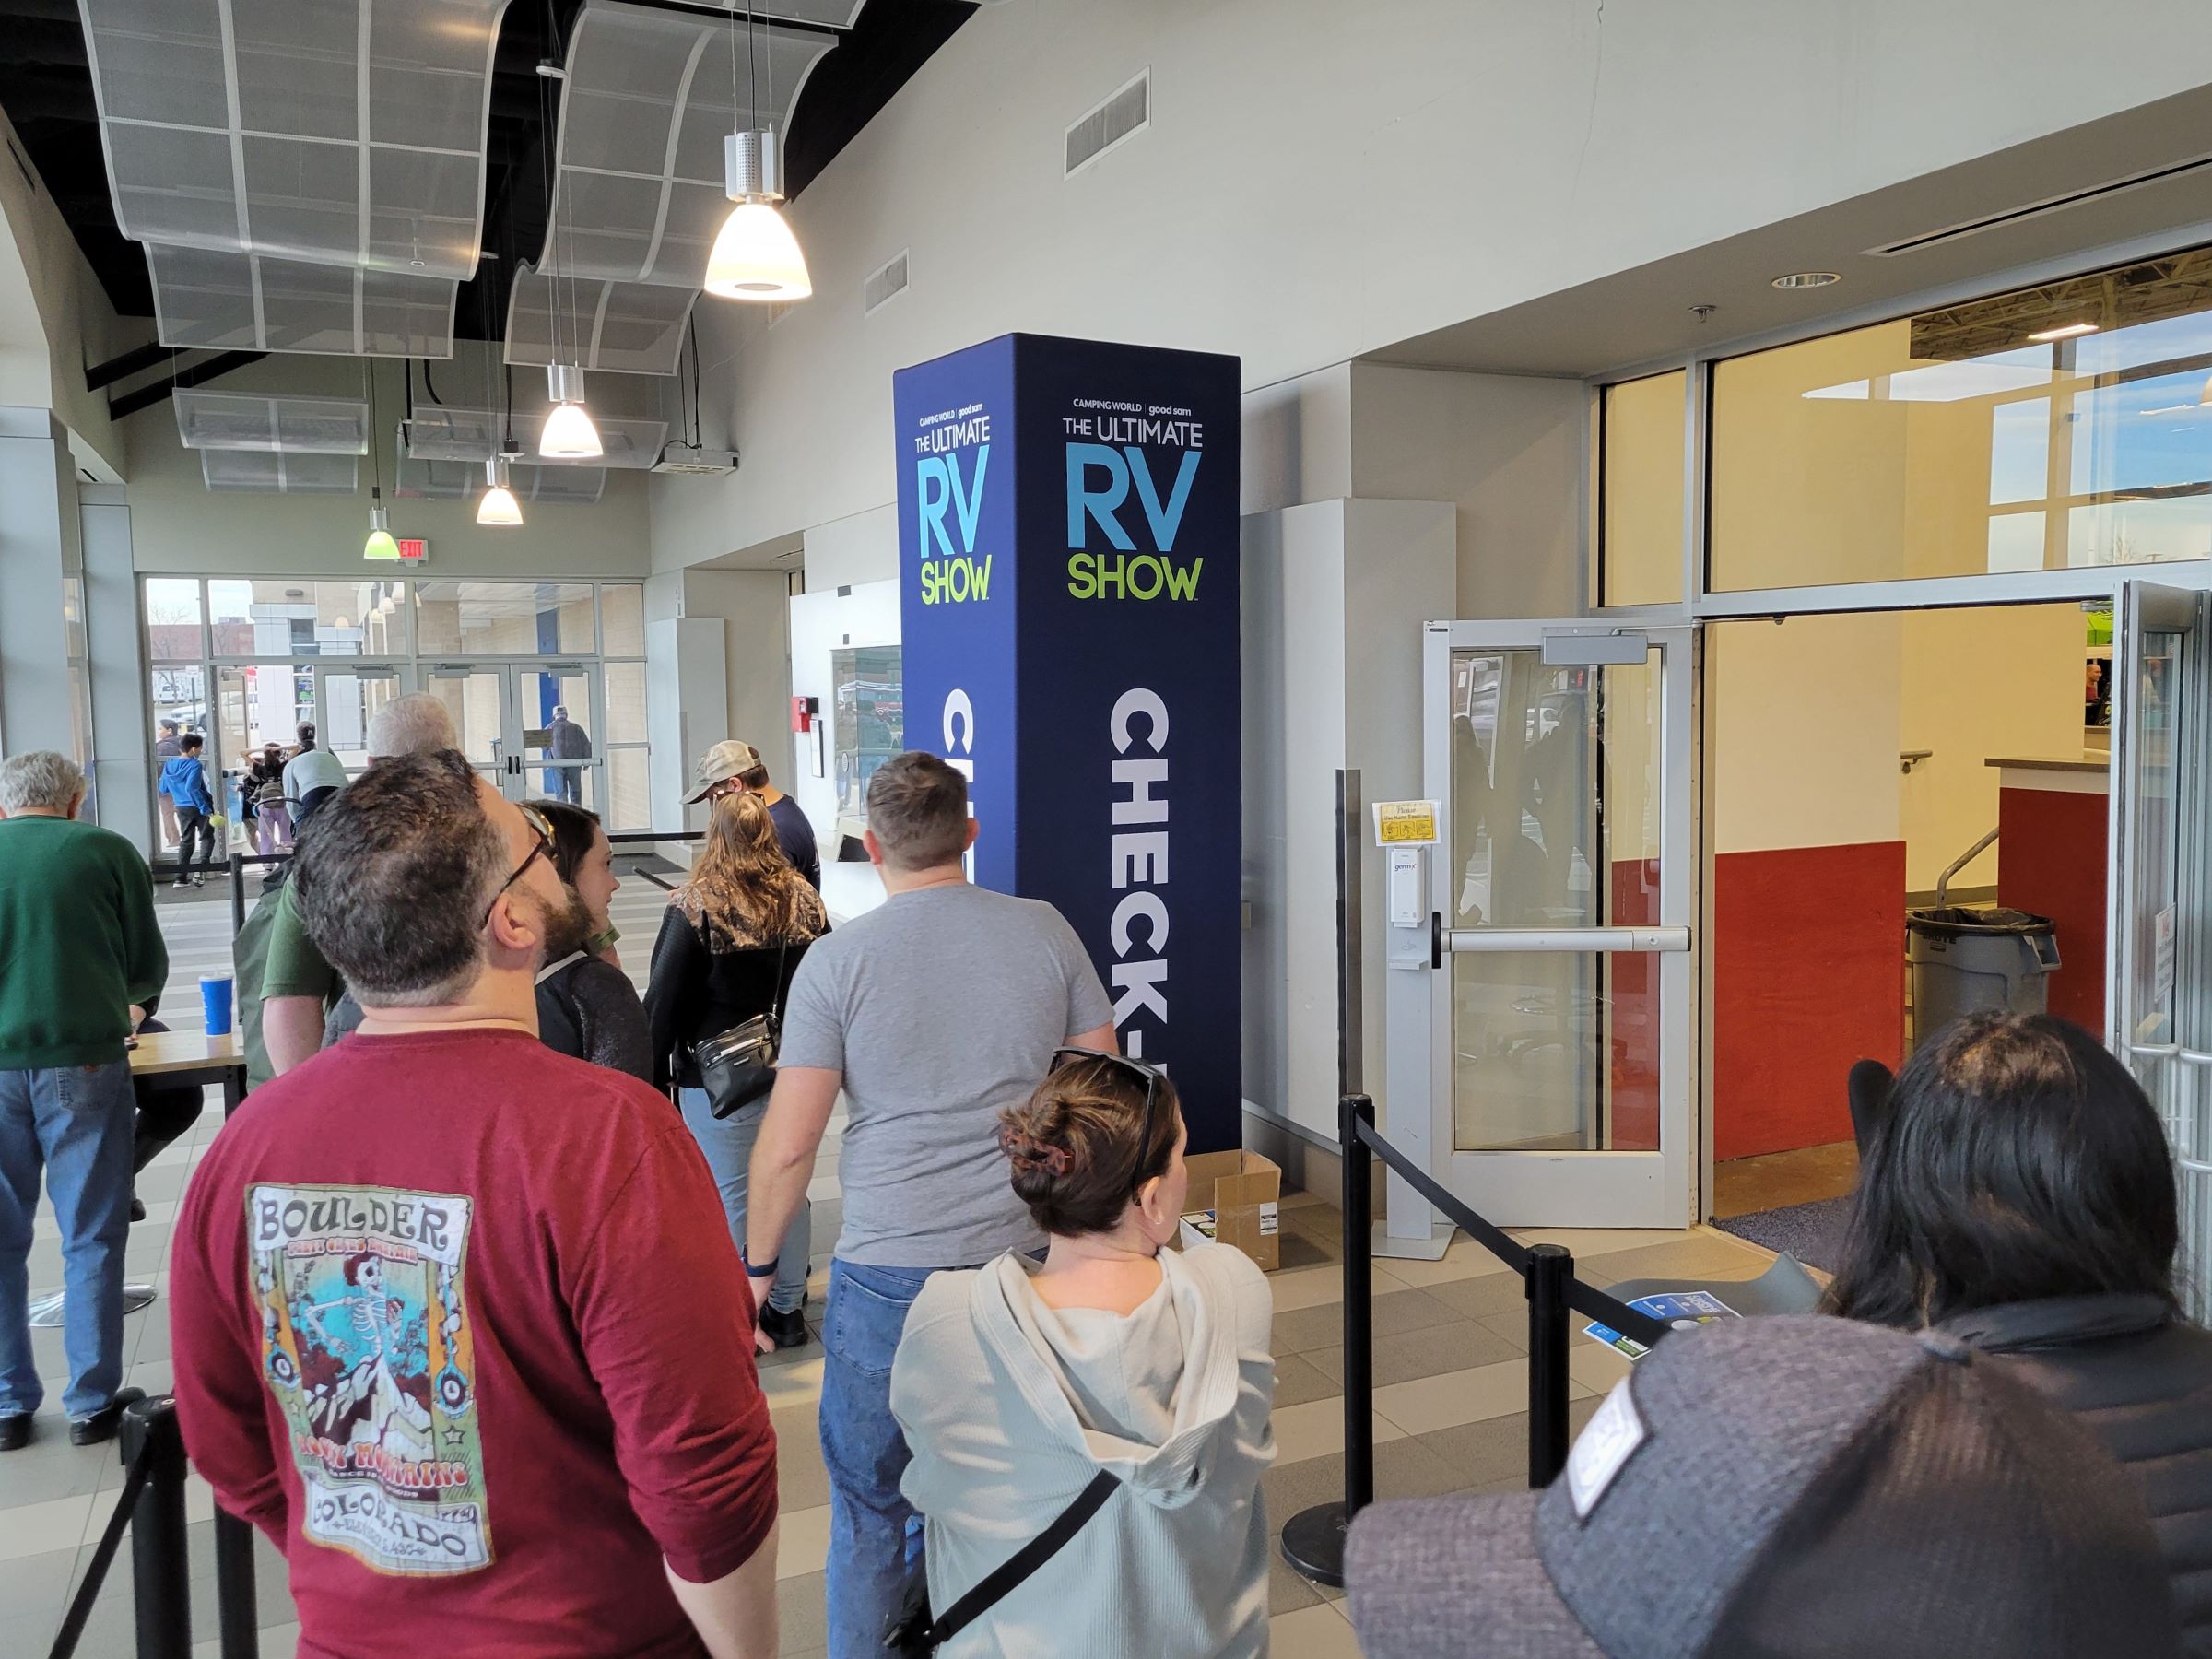 우리 동네의 덜레스 엑스포 센터(Dulles Expo Center)에서 열린 '캠핑카' 박람회인 RV쇼 잠깐 구경하기